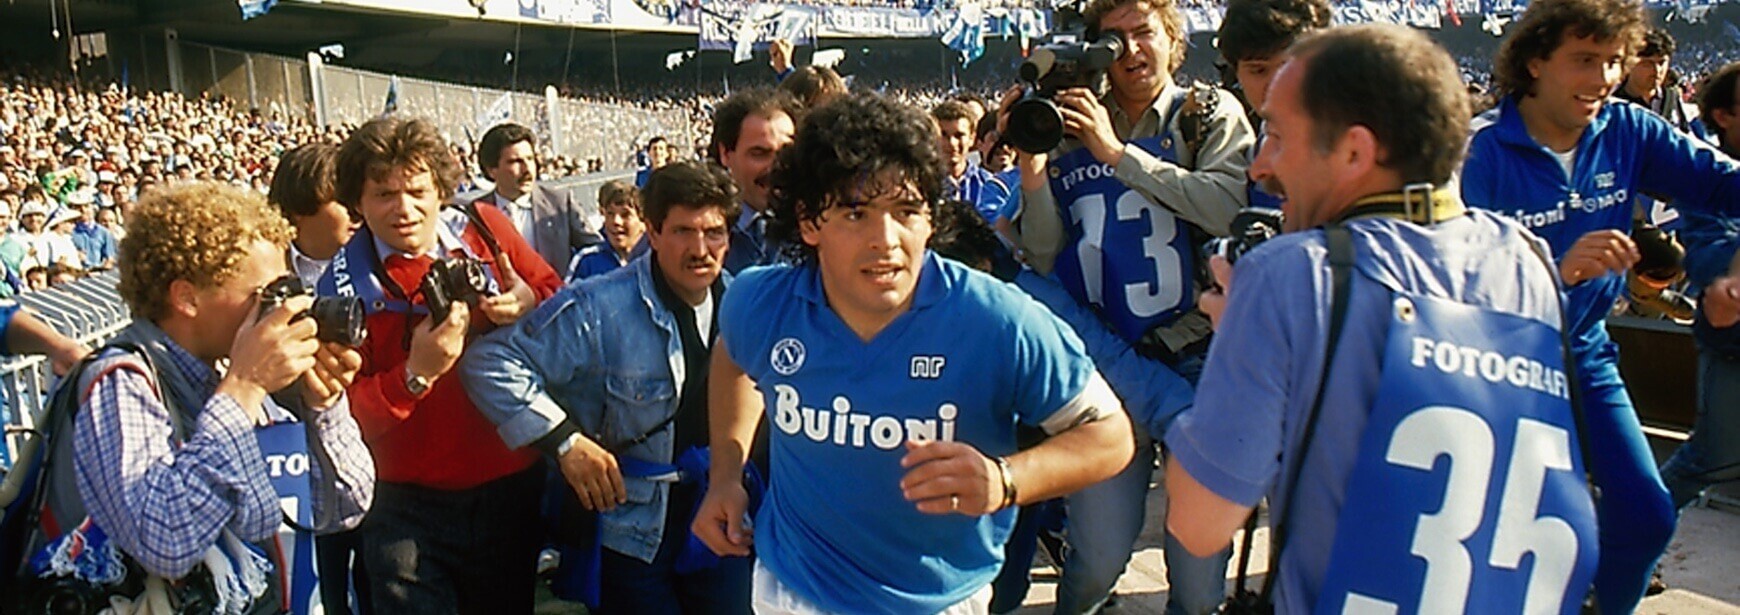 Plachý kluk ze slumu. Dokument Diego Maradona ukazuje sílu fanouškovství